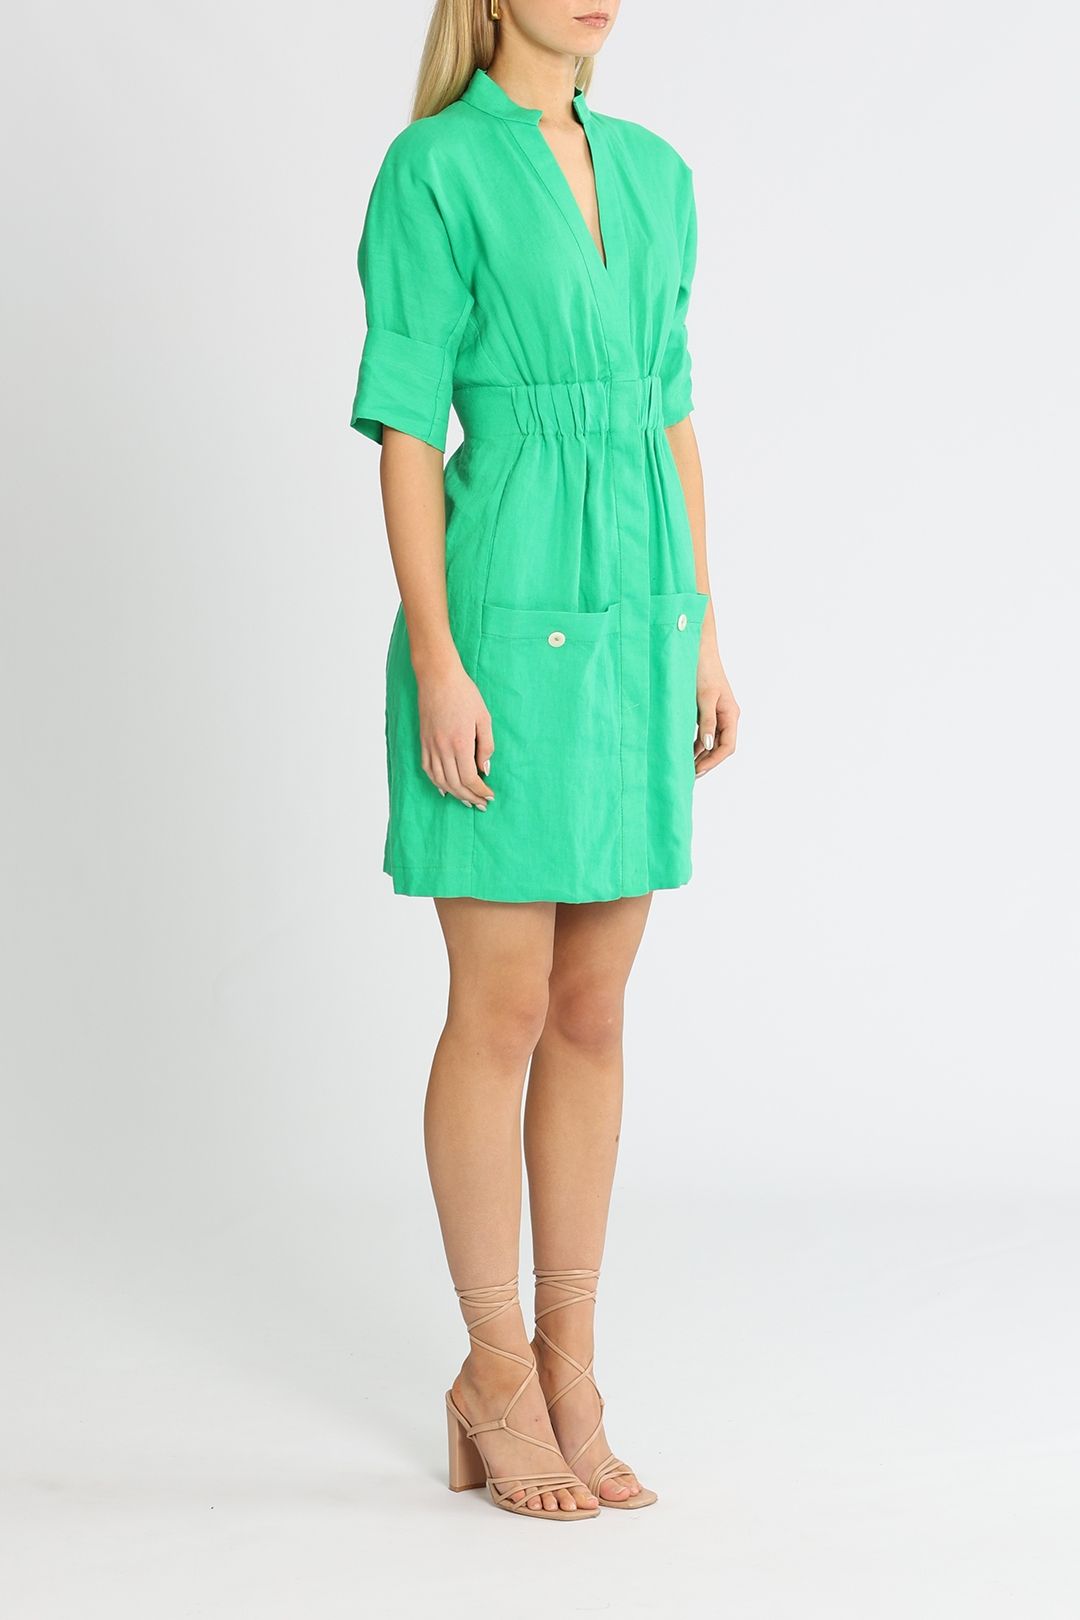 Kitx Protect Dress Green